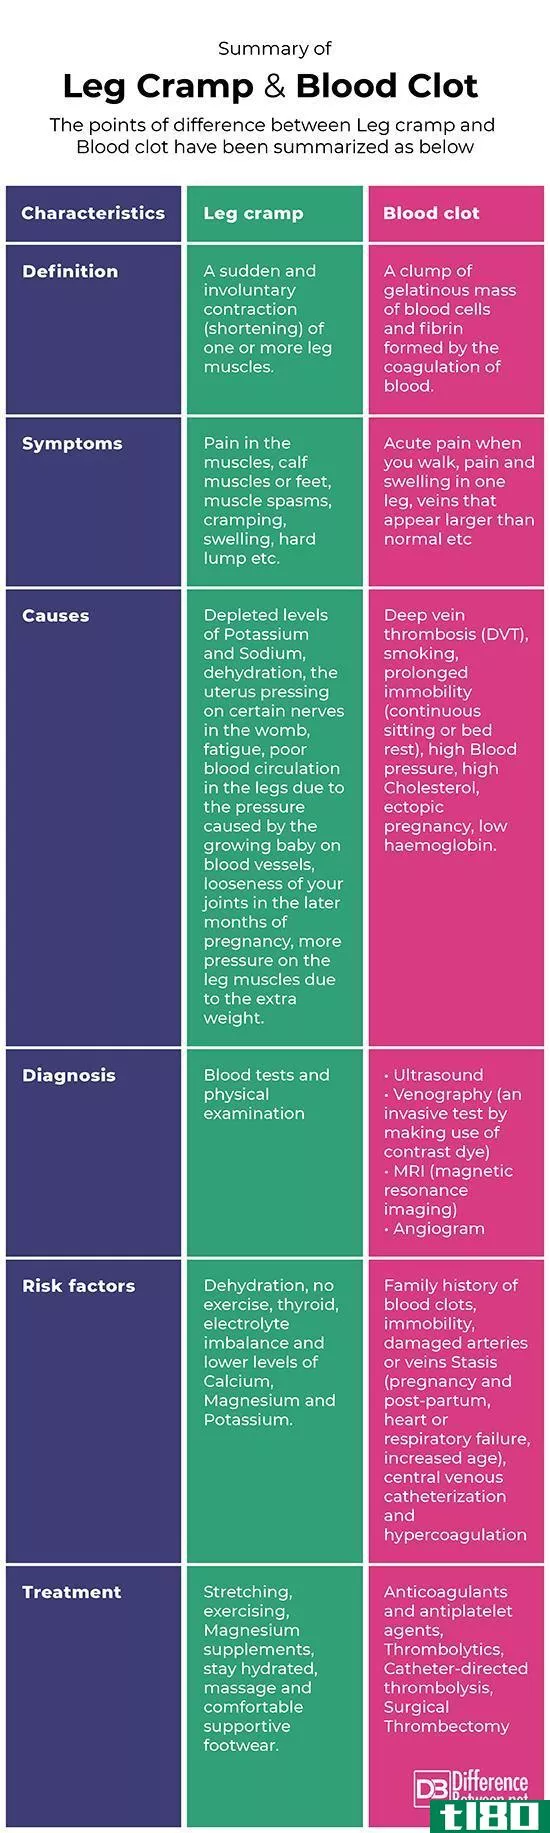 腿抽筋(leg cramp)和妊娠期血凝块(blood clot in pregnancy)的区别